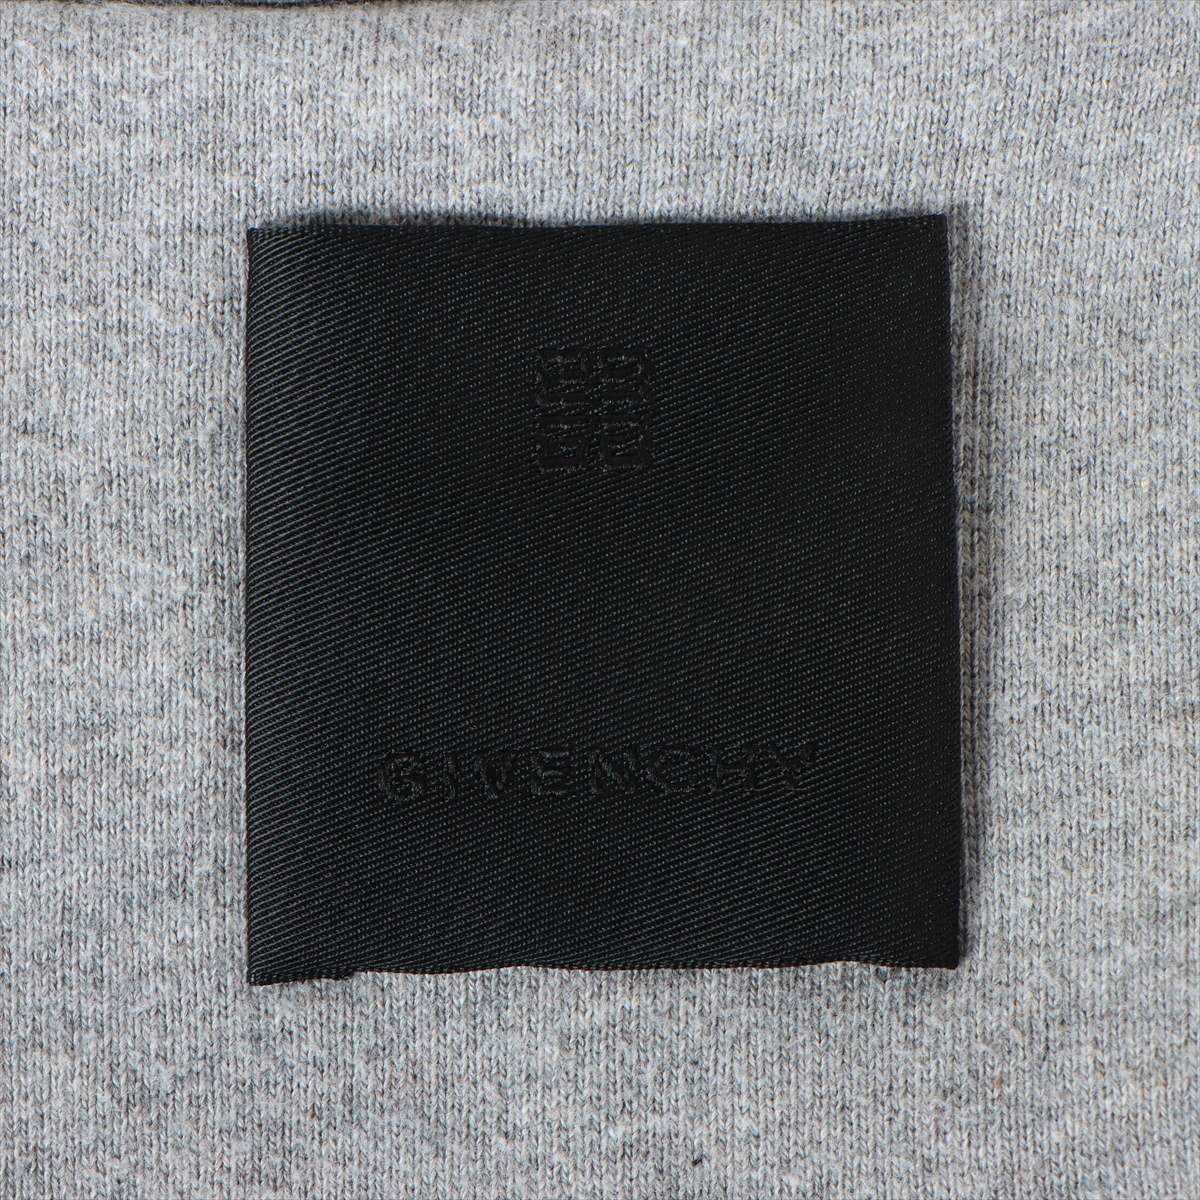 Givenchy 4G 21AW Cotton Parker L Men's Grey  Oversized back logo